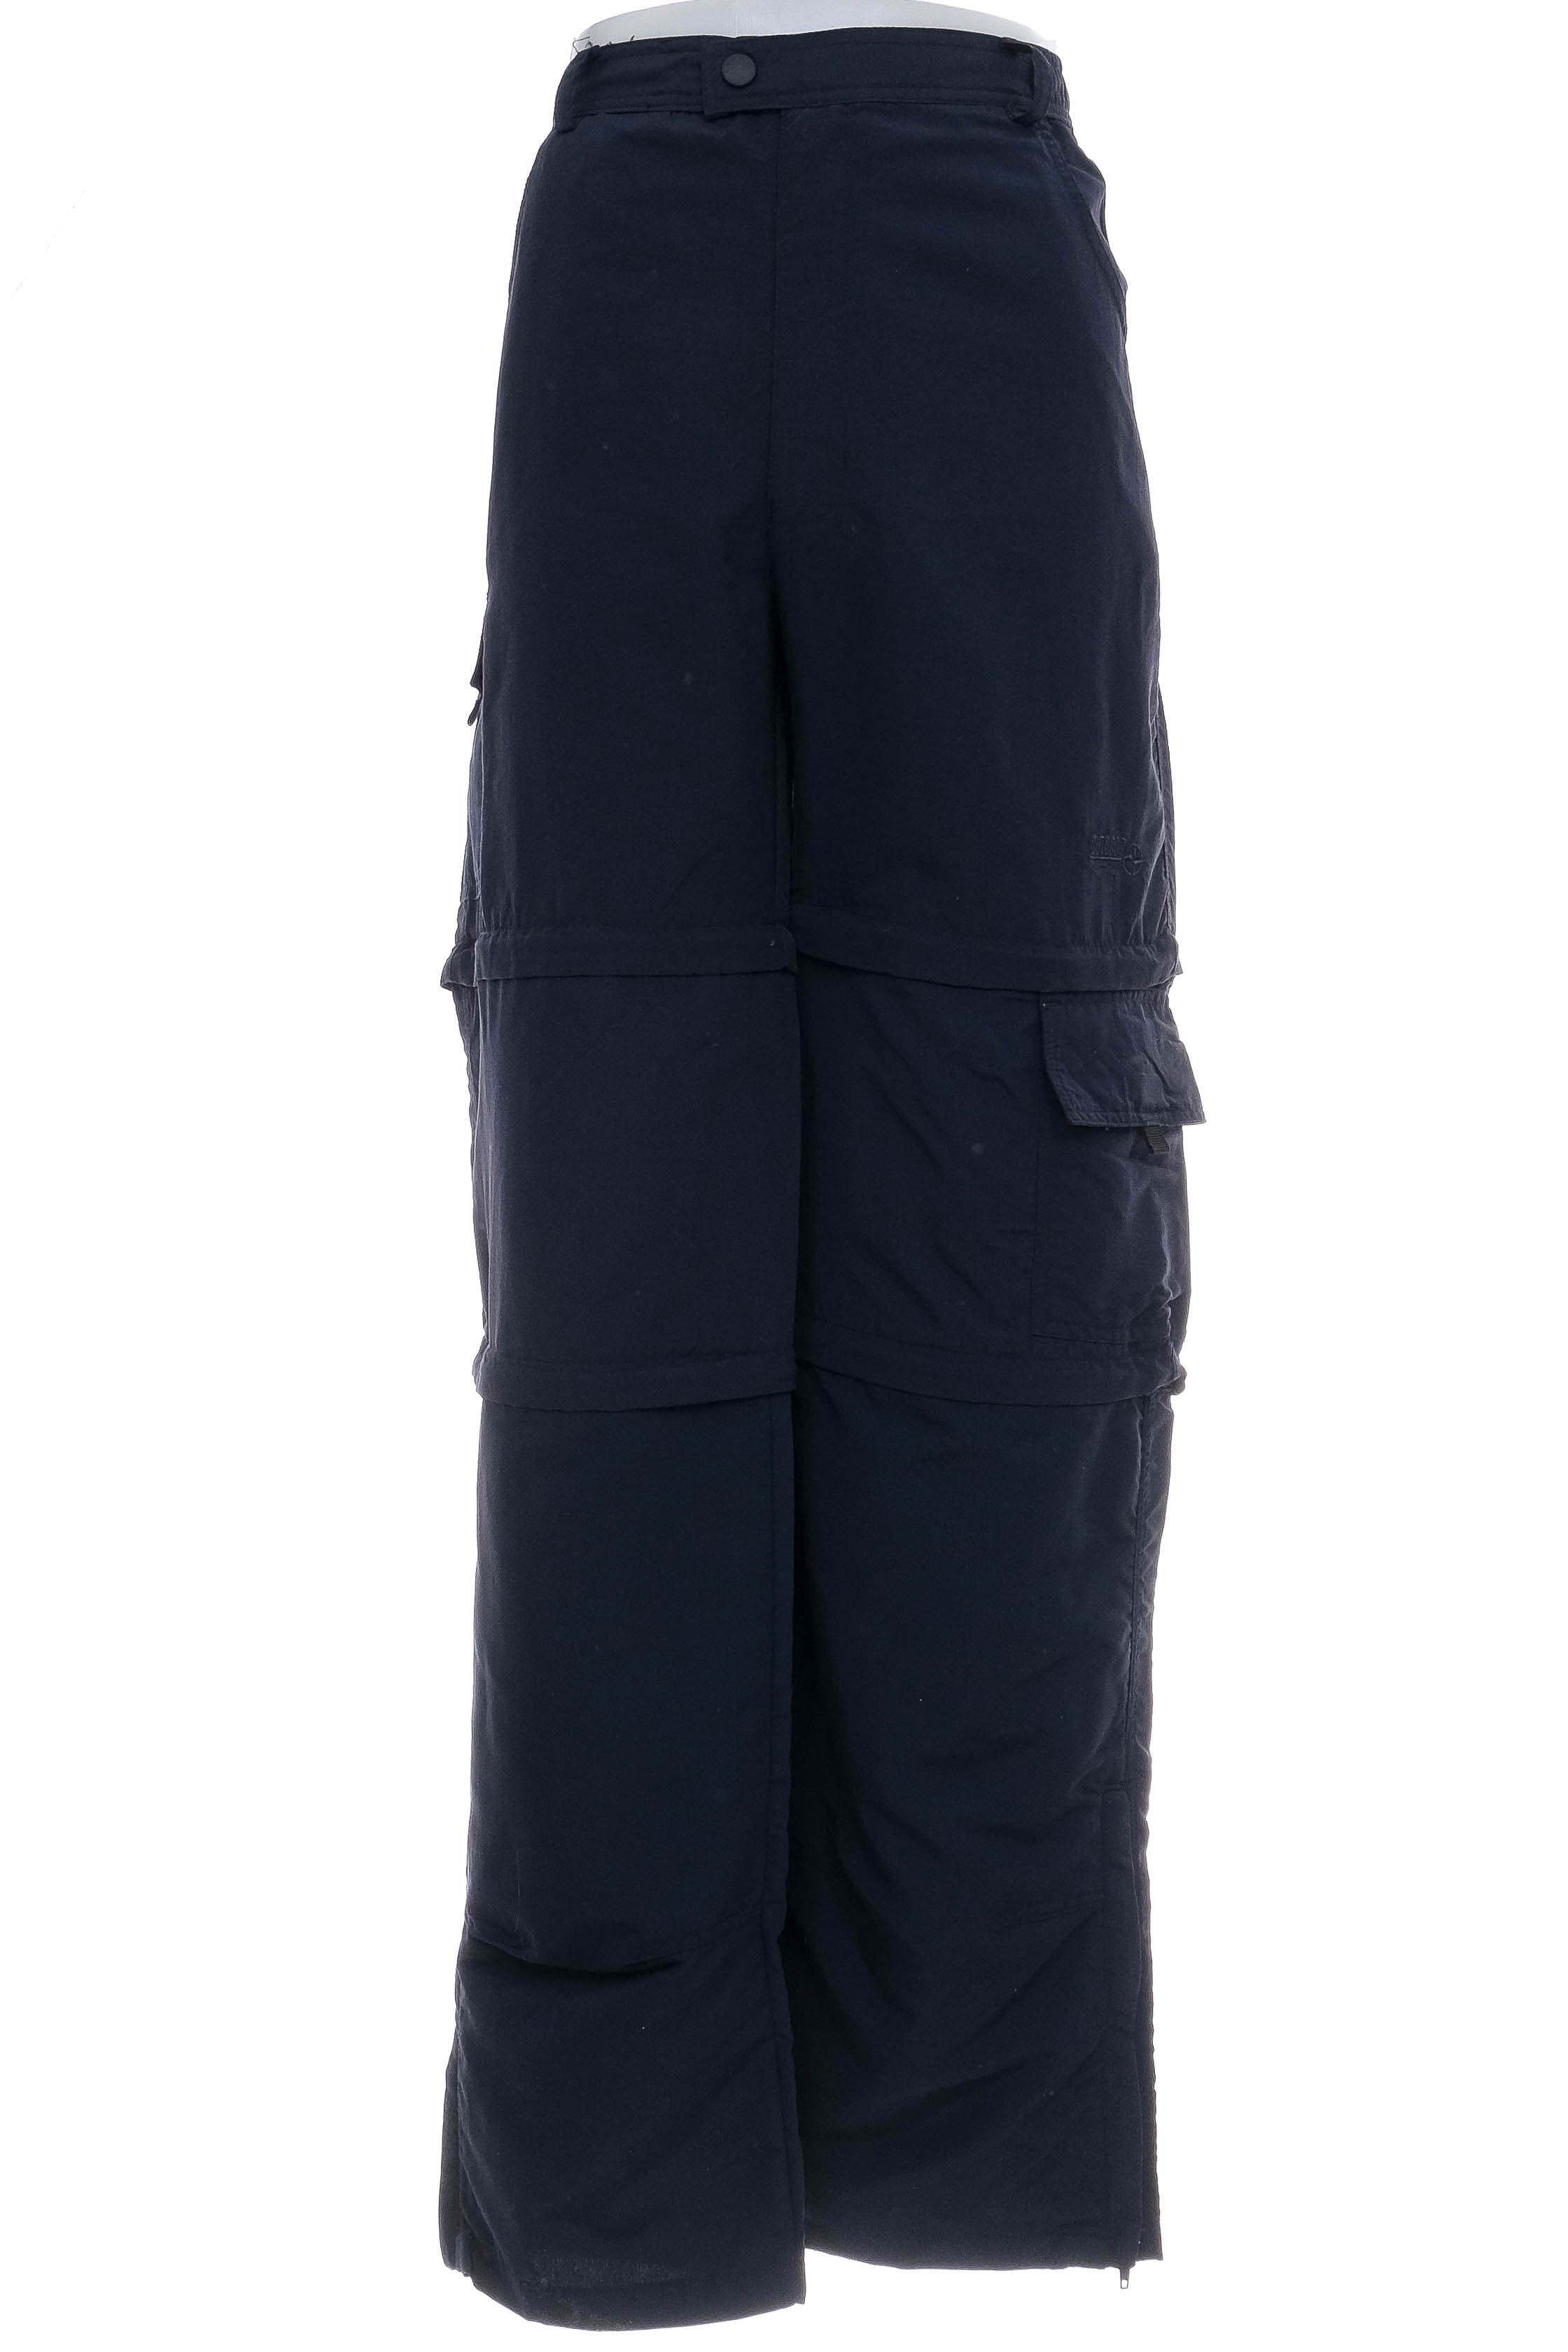 Pantalon pentru bărbați - Outdoor Discovery - 0